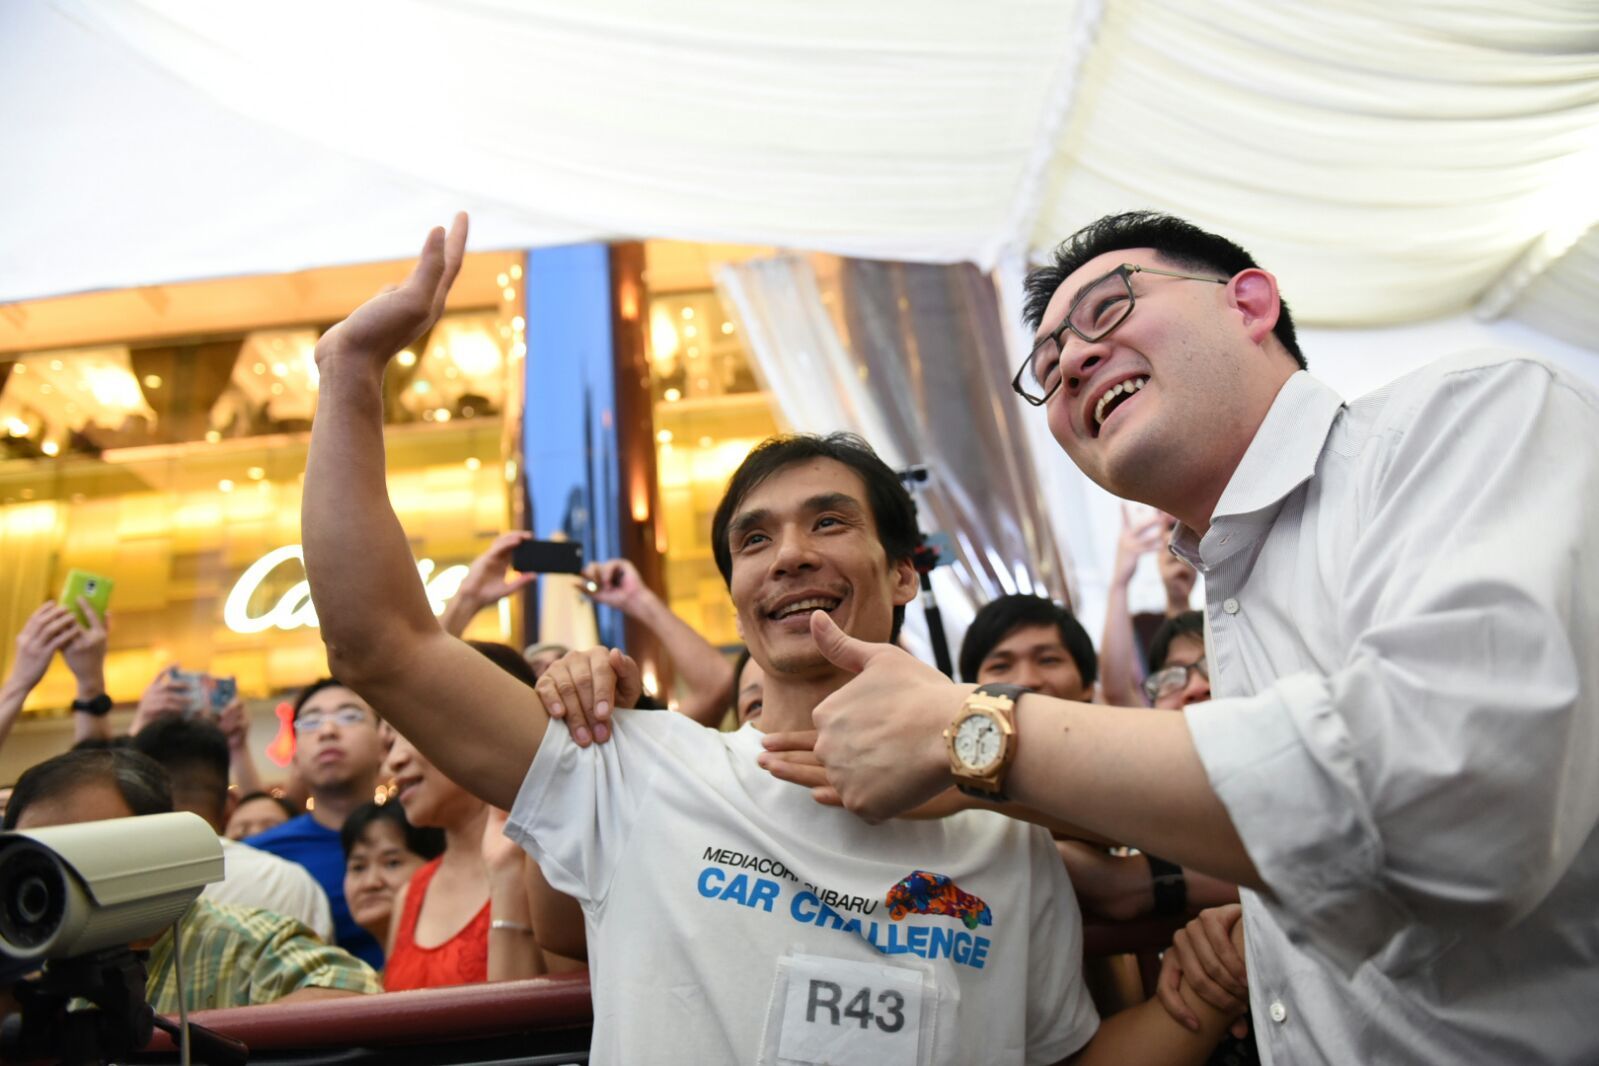 Người Việt chiến thắng cuộc thi 2015 Subaru Palm Challenge